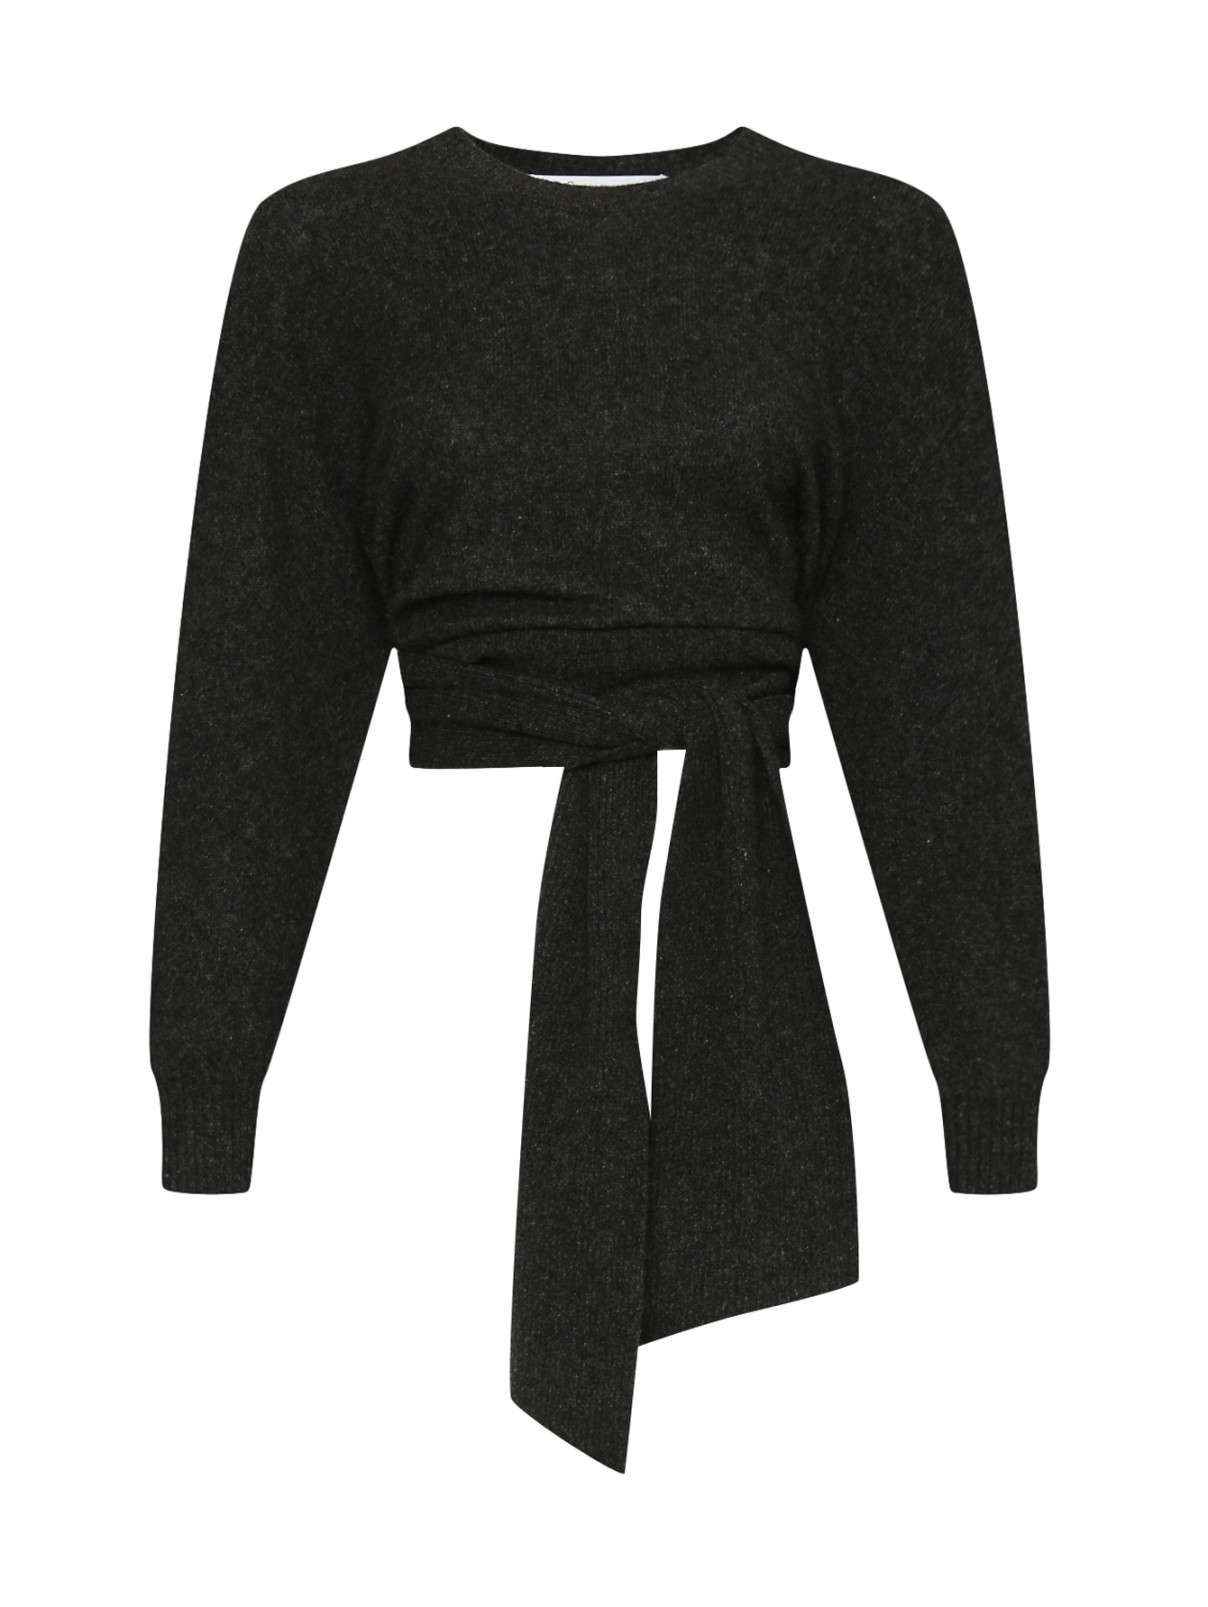 Джемпер из шерсти и хлопка с круглым вырезом Iro  –  Общий вид  – Цвет:  Серый